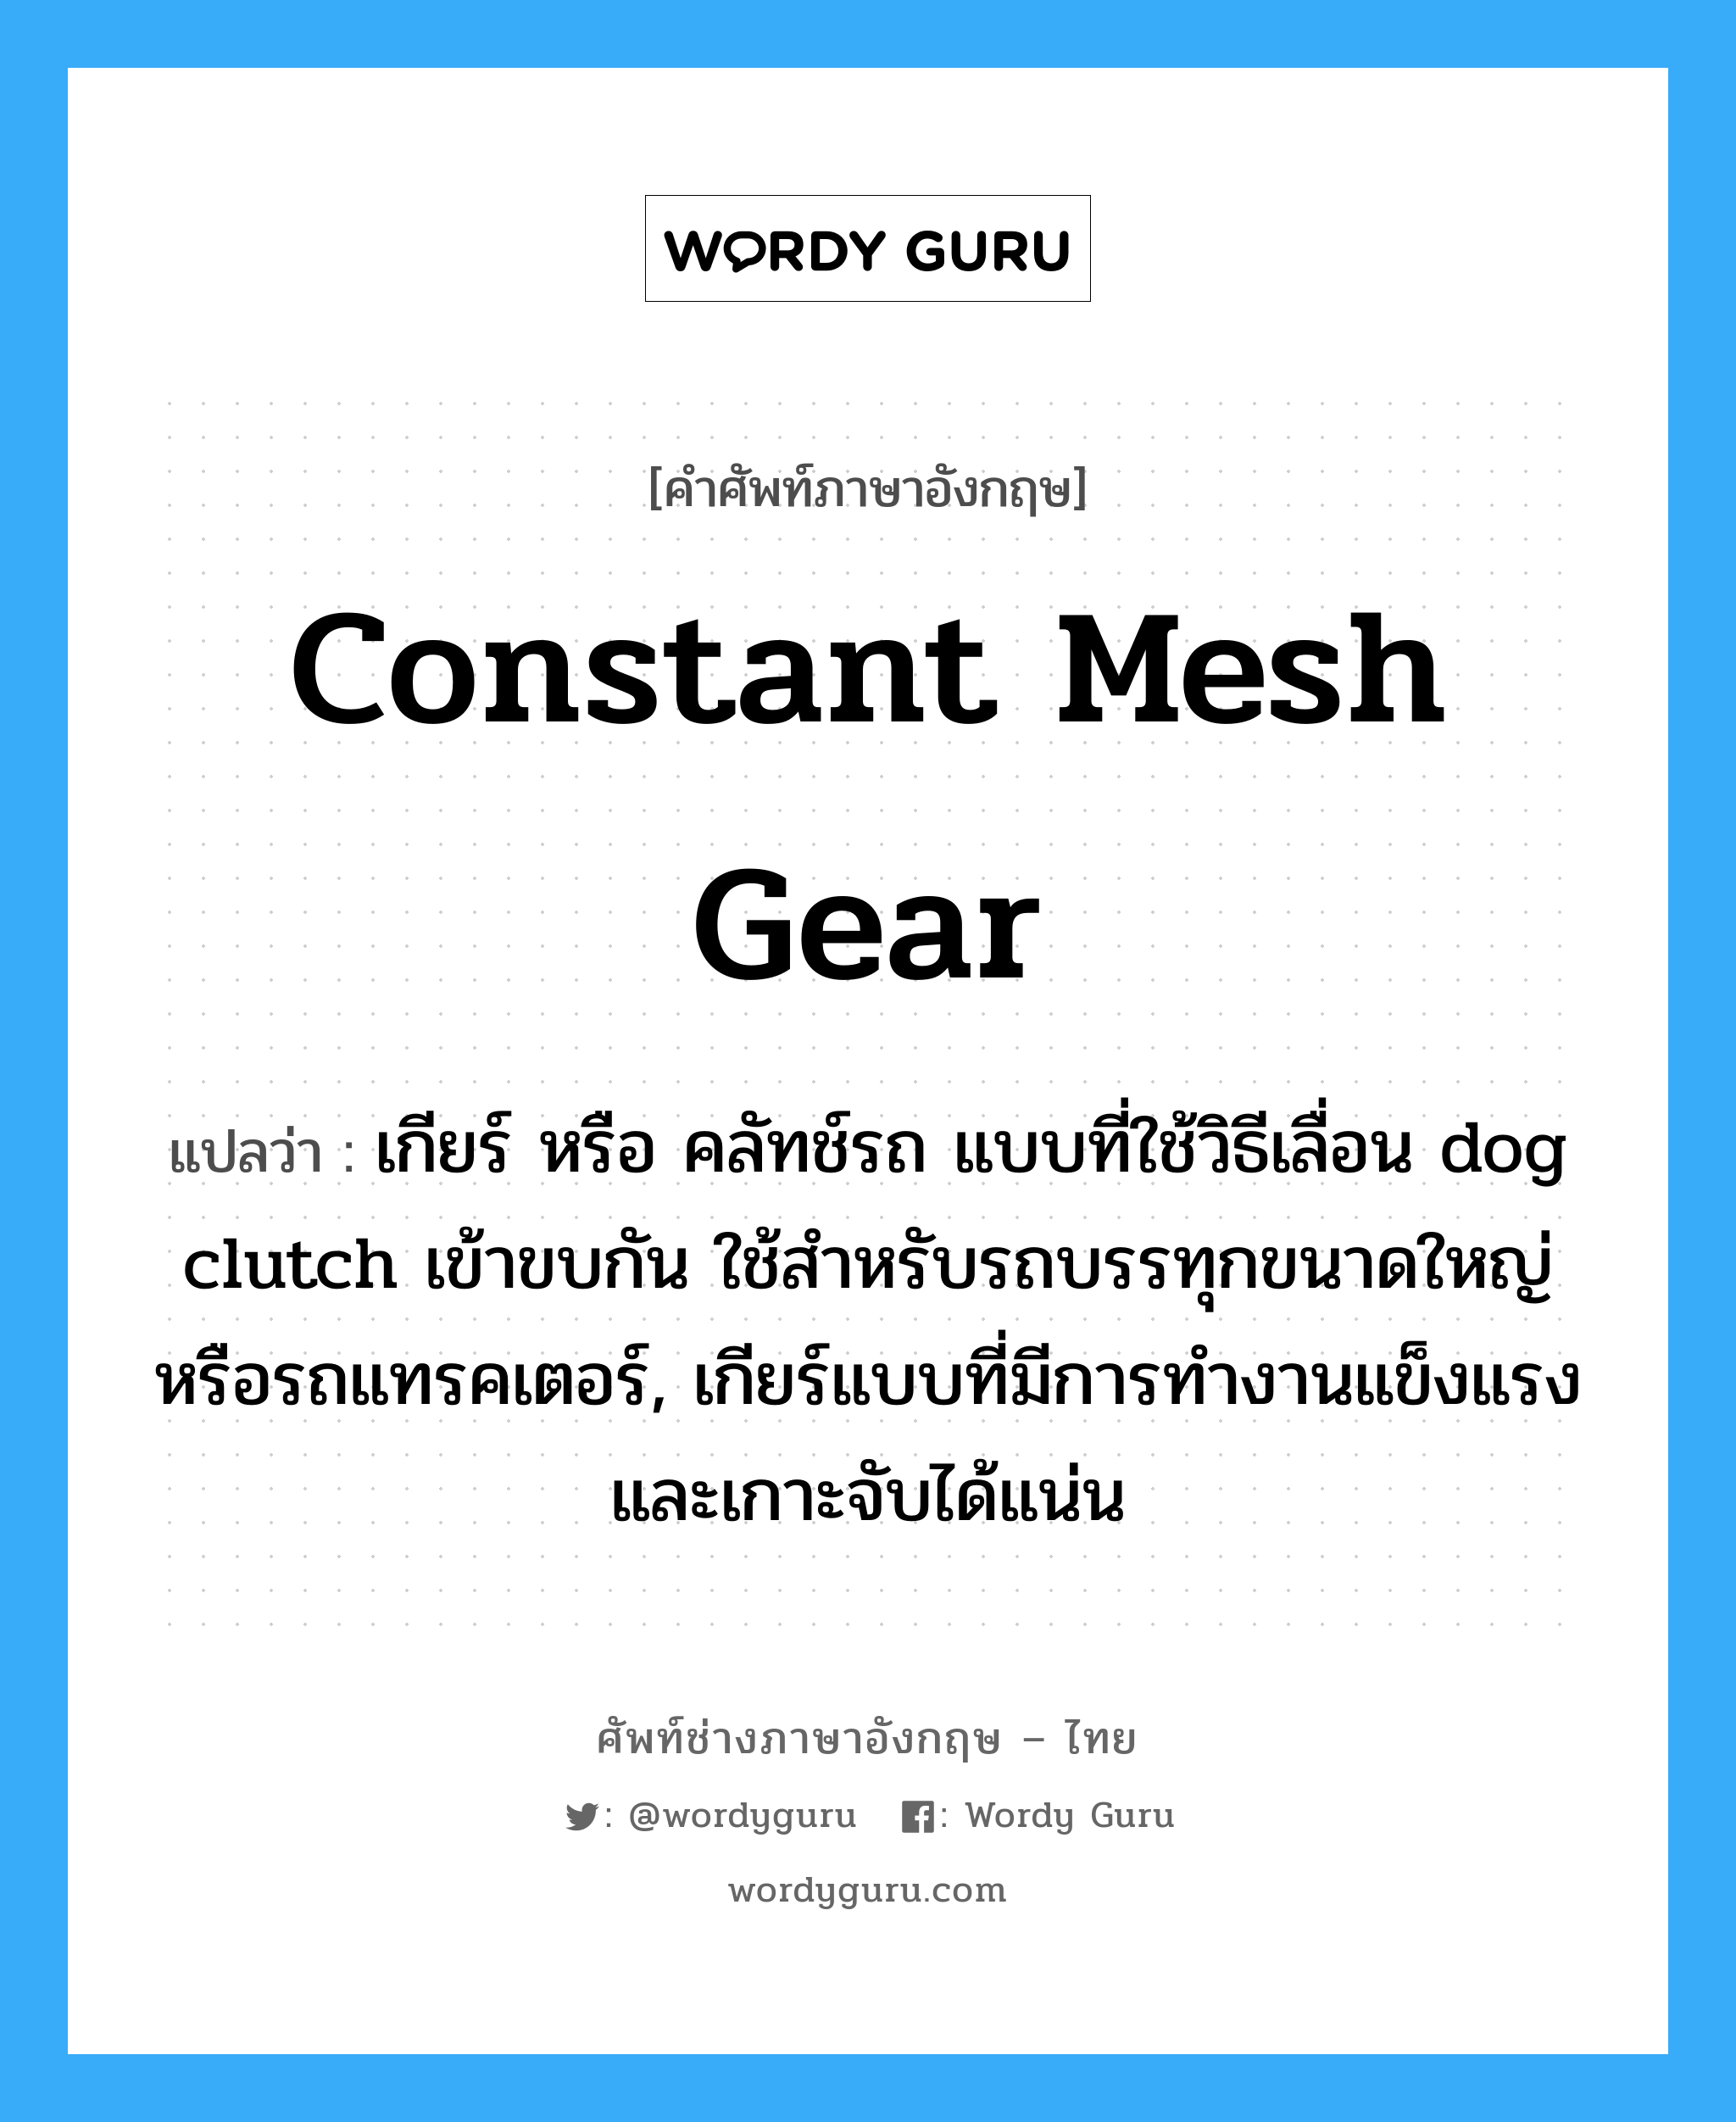 constant mesh gear แปลว่า?, คำศัพท์ช่างภาษาอังกฤษ - ไทย constant mesh gear คำศัพท์ภาษาอังกฤษ constant mesh gear แปลว่า เกียร์ หรือ คลัทช์รถ แบบที่ใช้วิธีเลื่อน dog clutch เข้าขบกัน ใช้สำหรับรถบรรทุกขนาดใหญ่หรือรถแทรคเตอร์, เกียร์แบบที่มีการทำงานแข็งแรงและเกาะจับได้แน่น